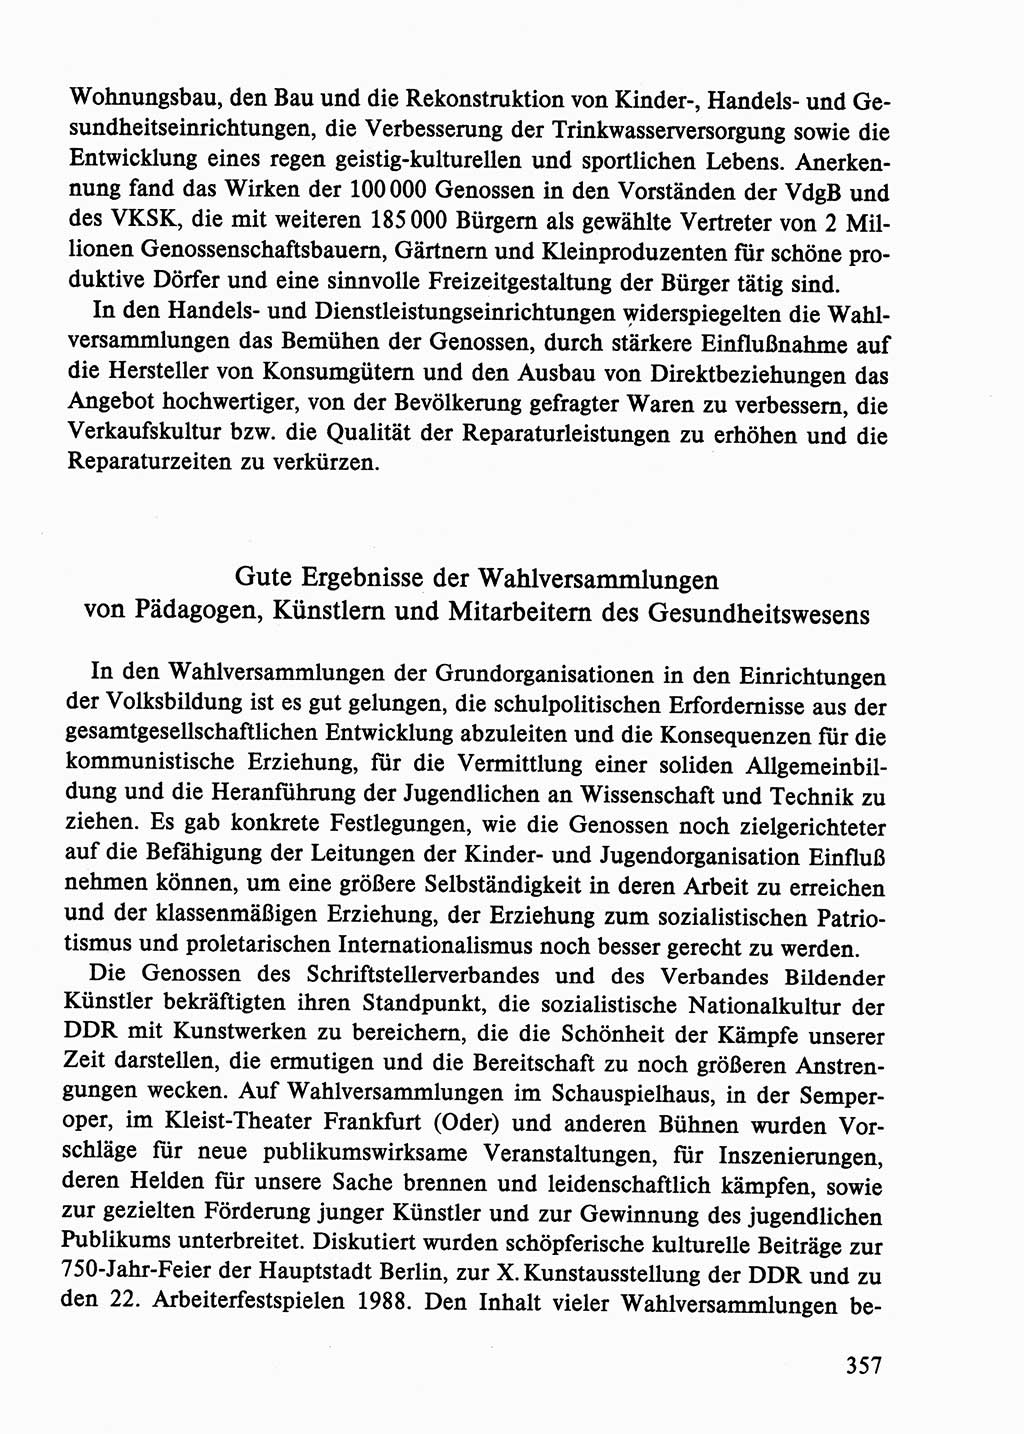 Dokumente der Sozialistischen Einheitspartei Deutschlands (SED) [Deutsche Demokratische Republik (DDR)] 1986-1987, Seite 357 (Dok. SED DDR 1986-1987, S. 357)